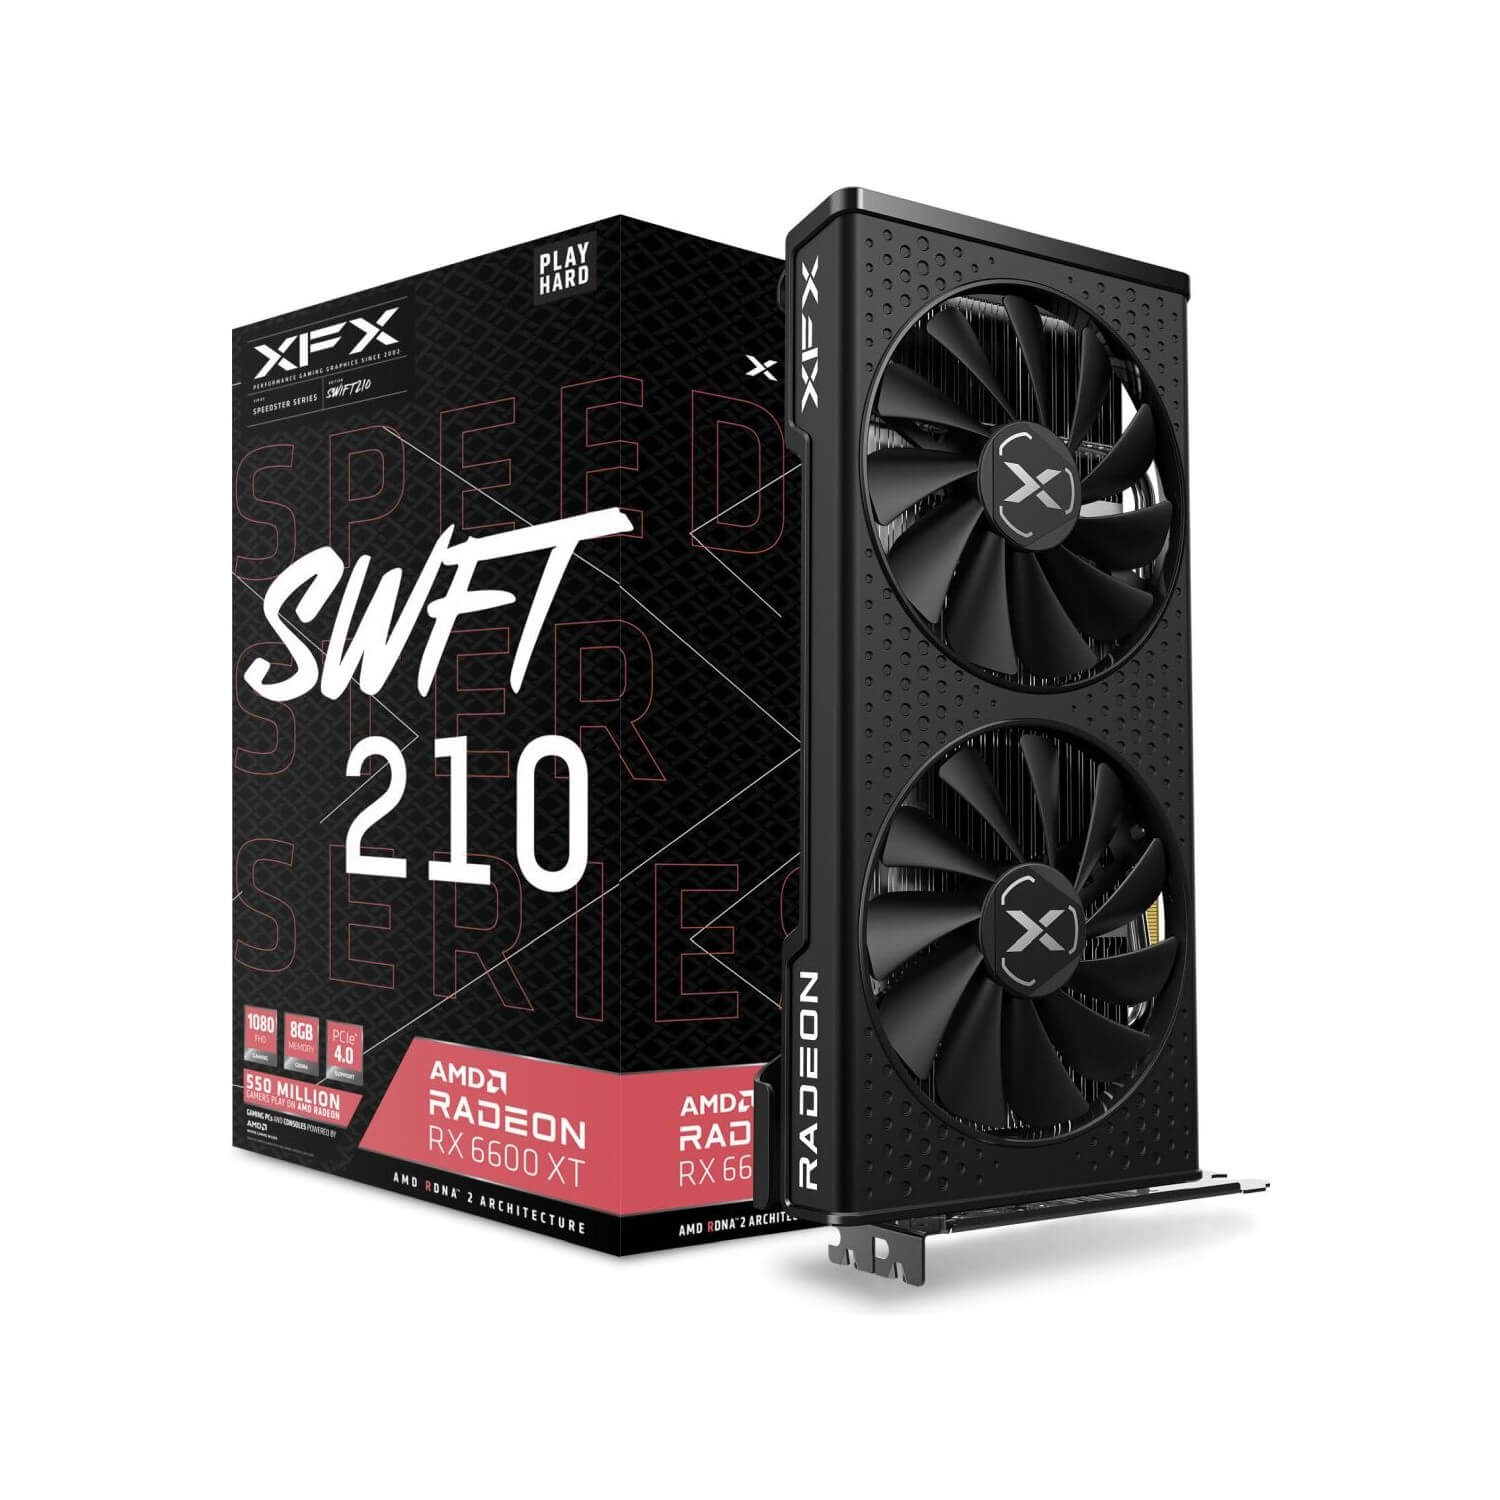 Видеокарта Xfx Speedster Swft 210 AMD Radeon RX6600XT 8GB (RX-66XT8DFDQ)